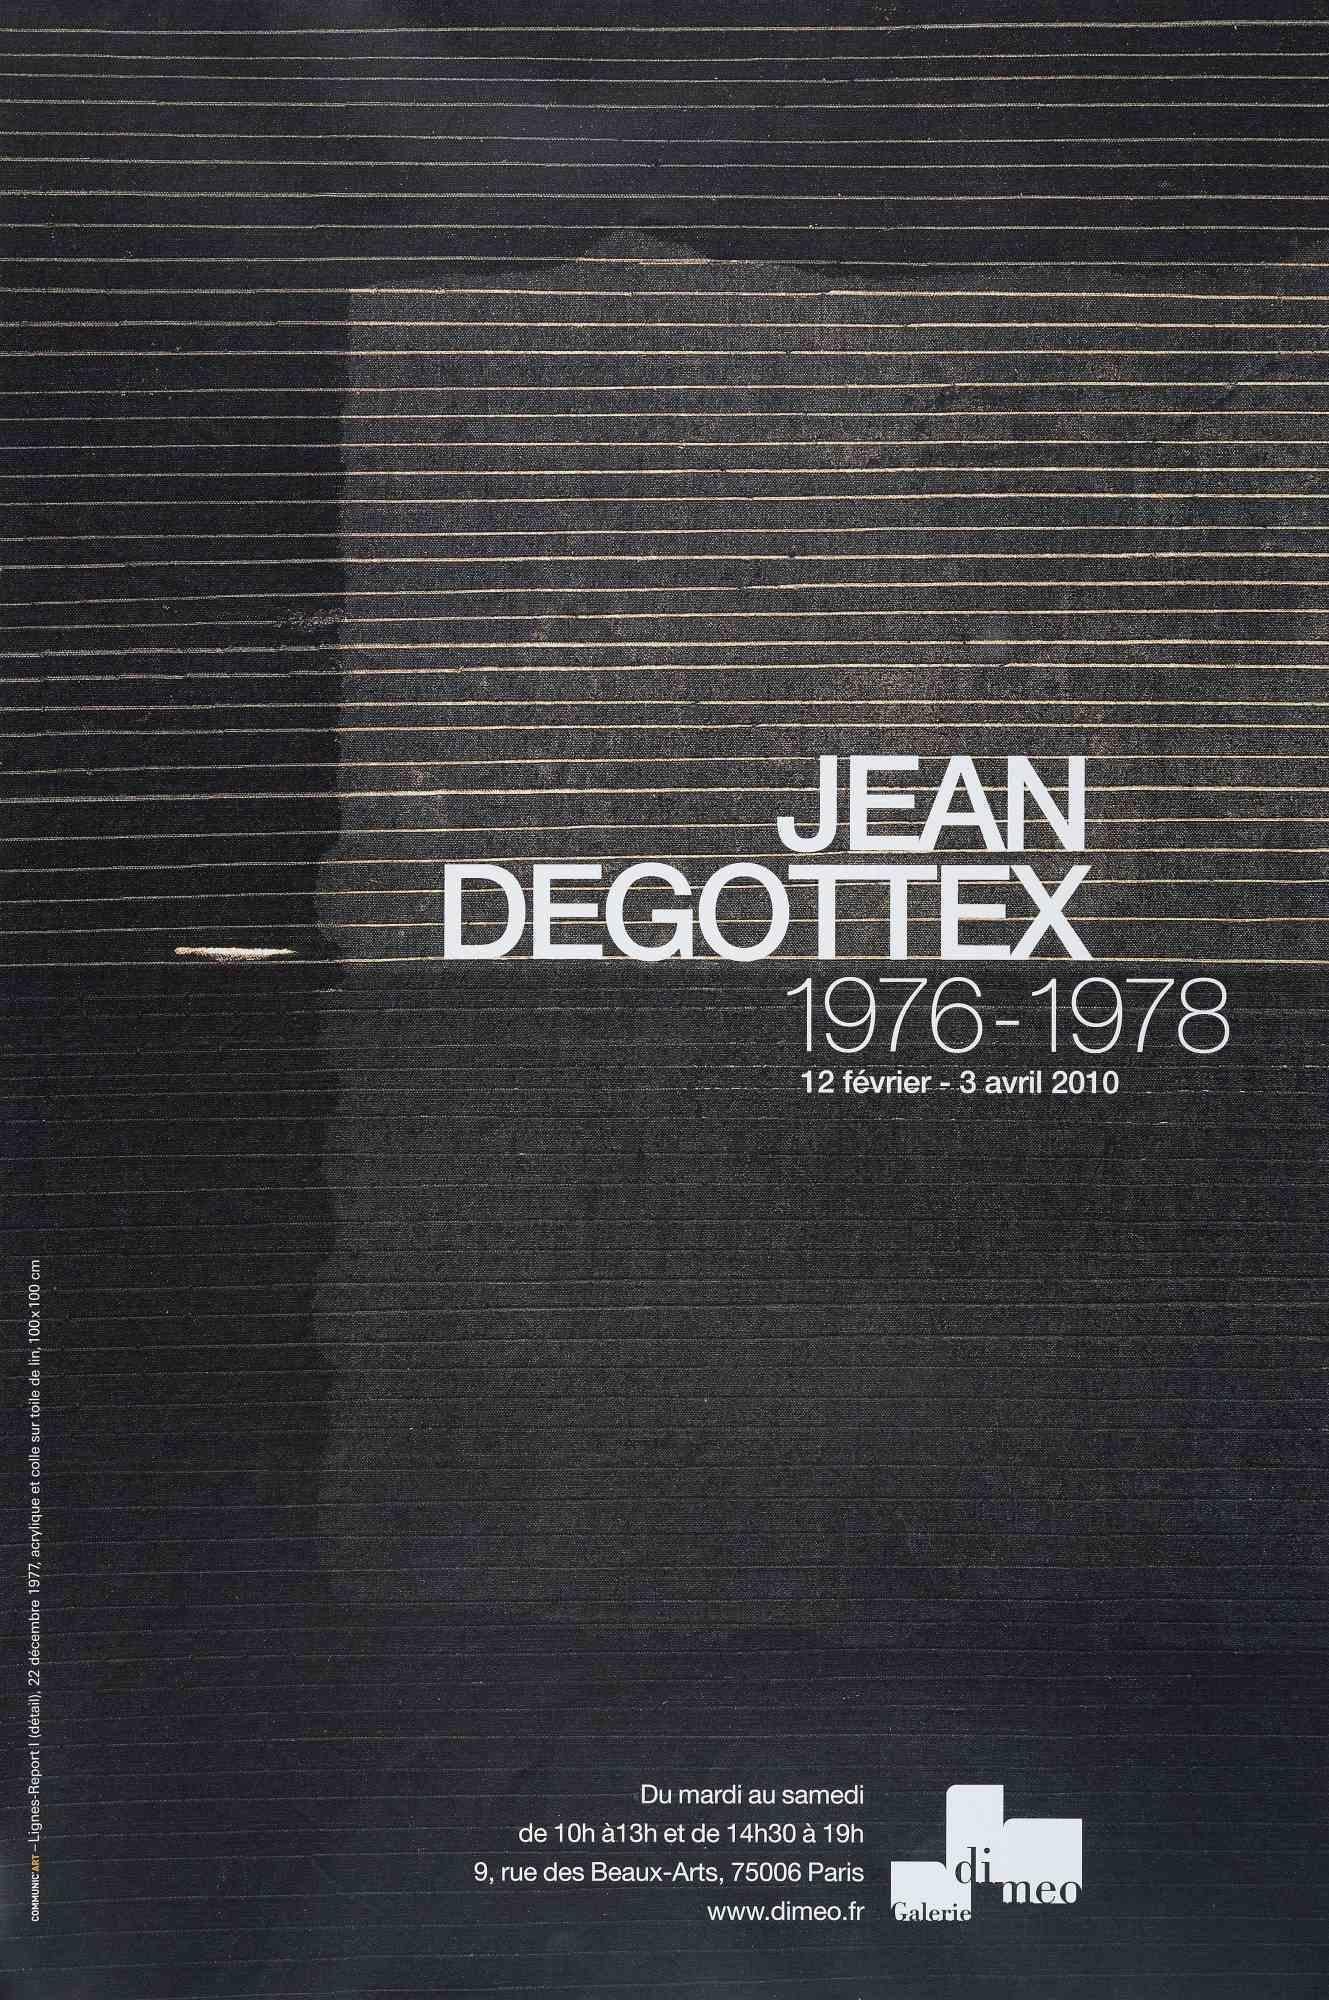 Jean Degottex - Exposición de carteles vintage - 2010